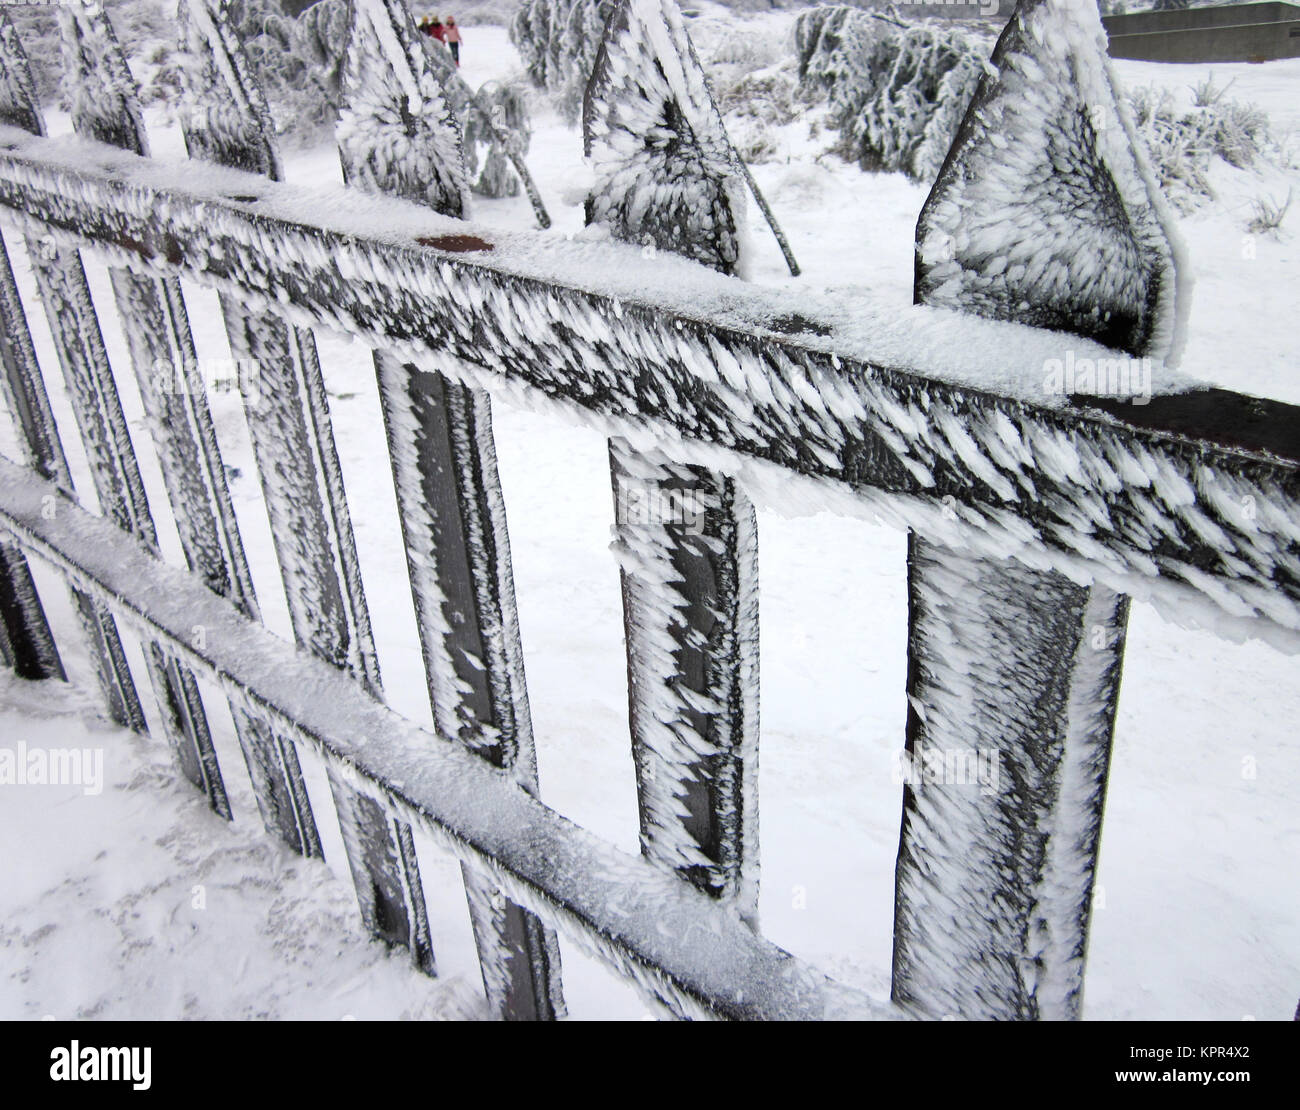 Snow fence Stock Photo